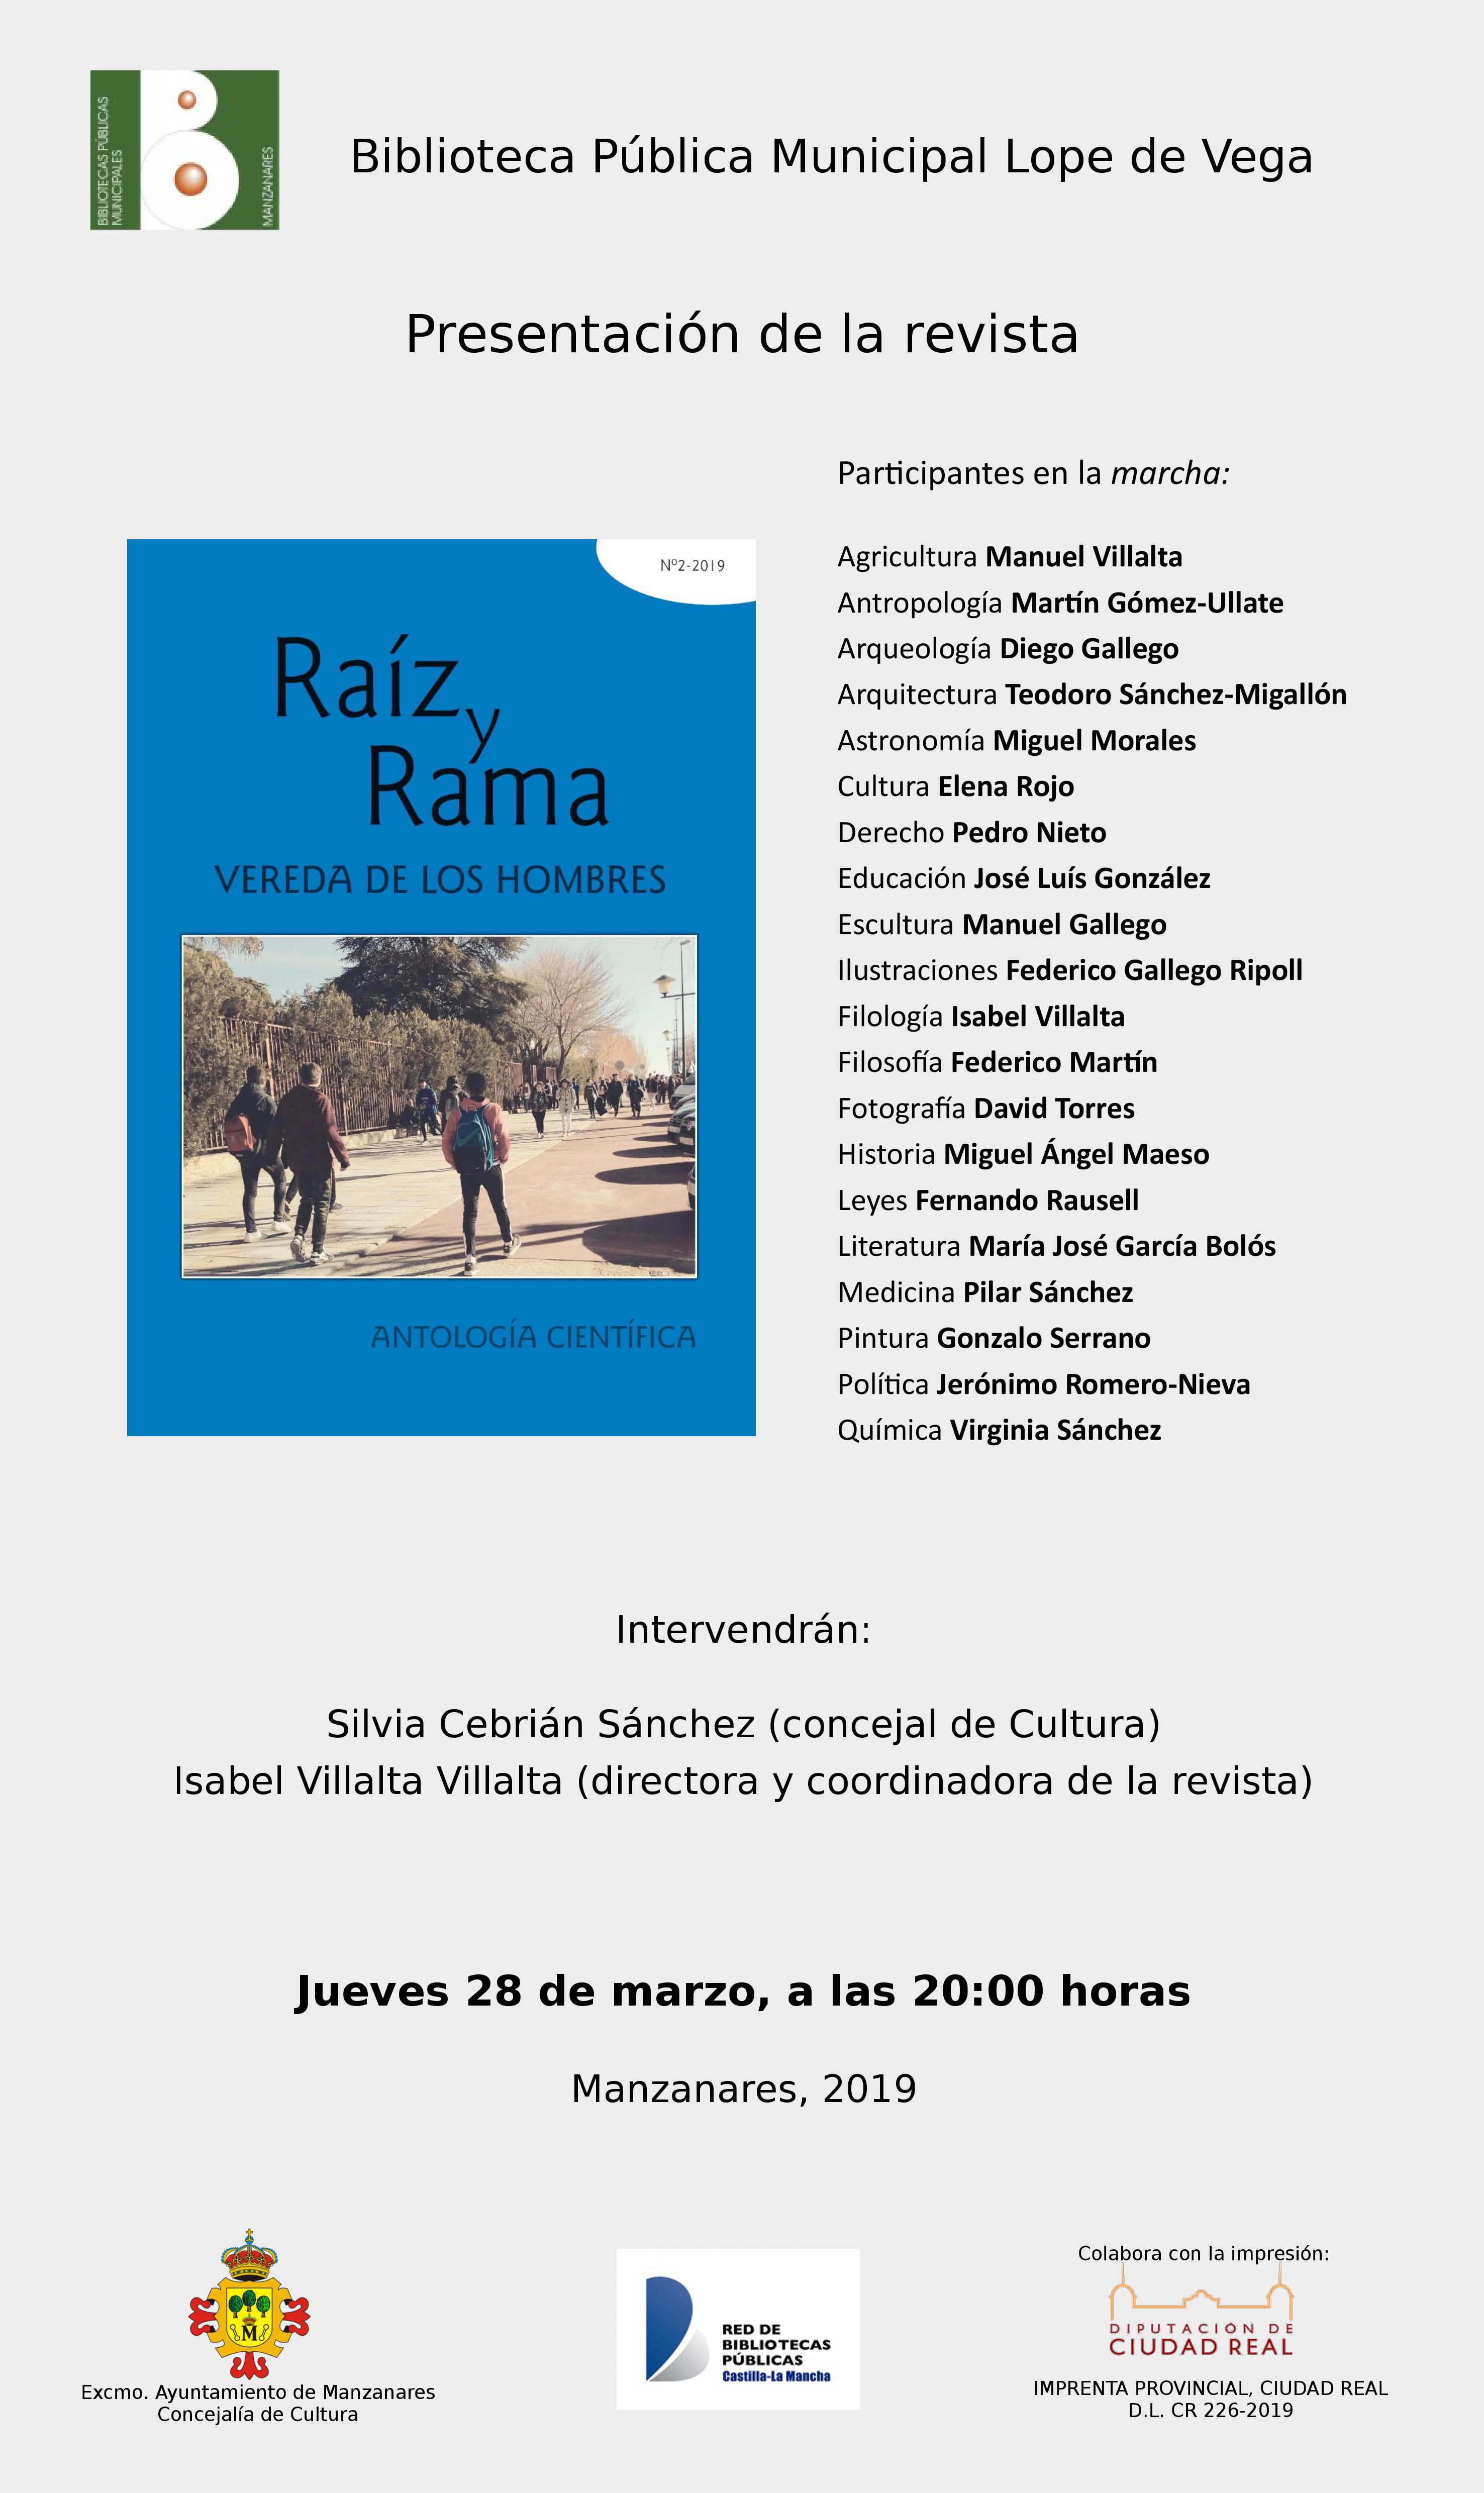 Presentación de la Revista “Raíz y Rama” (28 de marzo 2019, Manzanares, 20 horas)